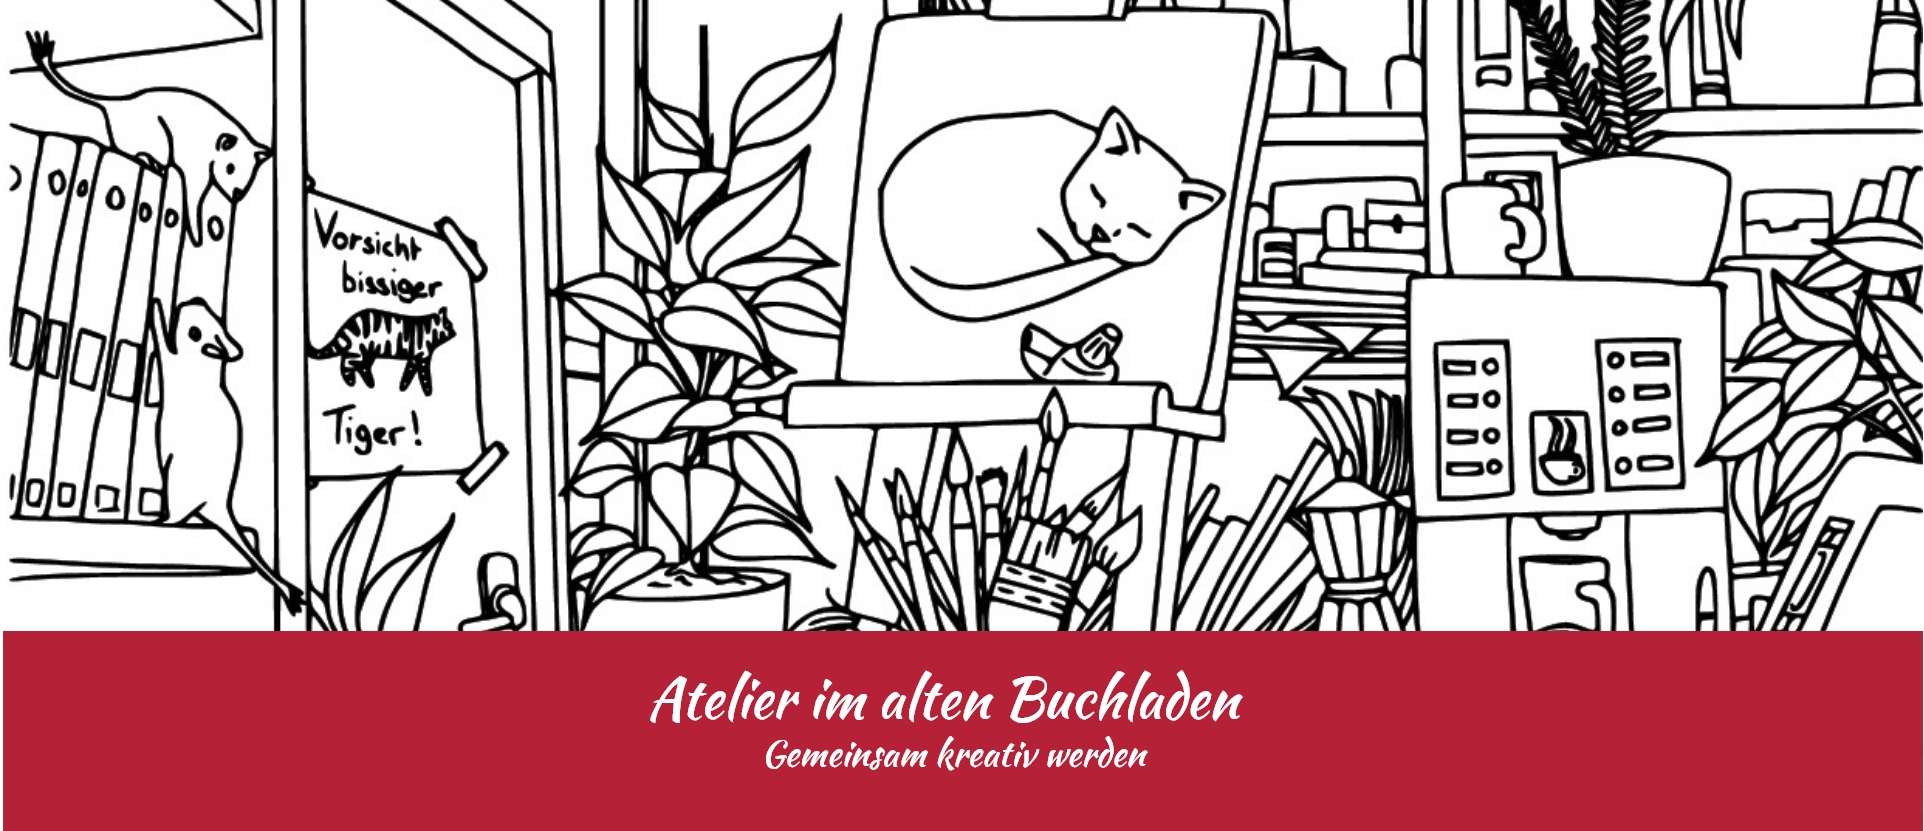 atelier_im_alten_buchladen_cover